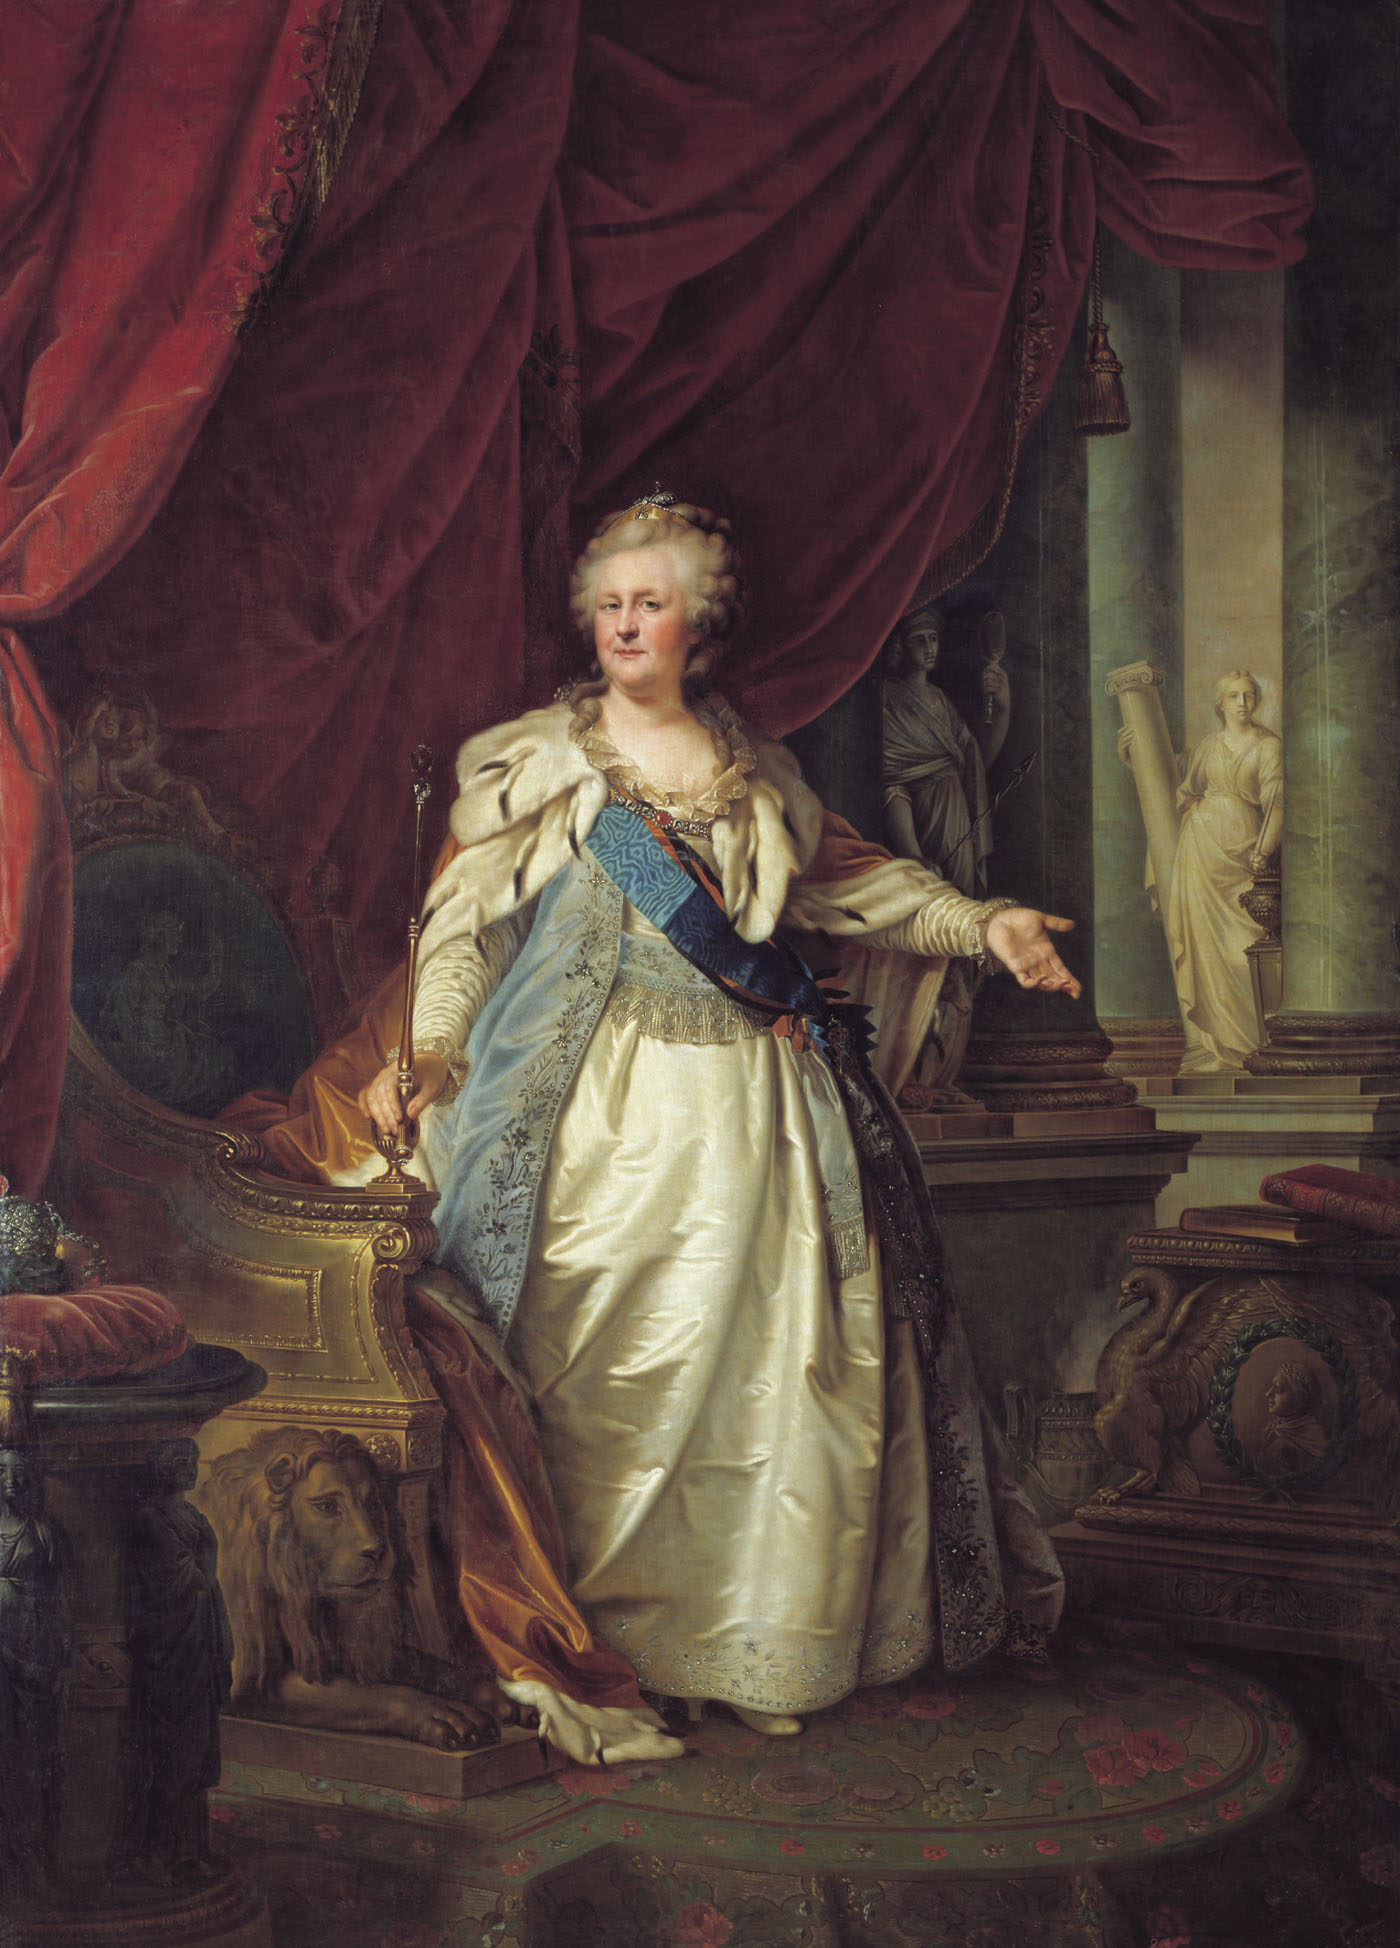 Лампи-старший. Портрет императрицы Екатерины II с аллегорическими фигурами Крепости и Истины. 1790-е